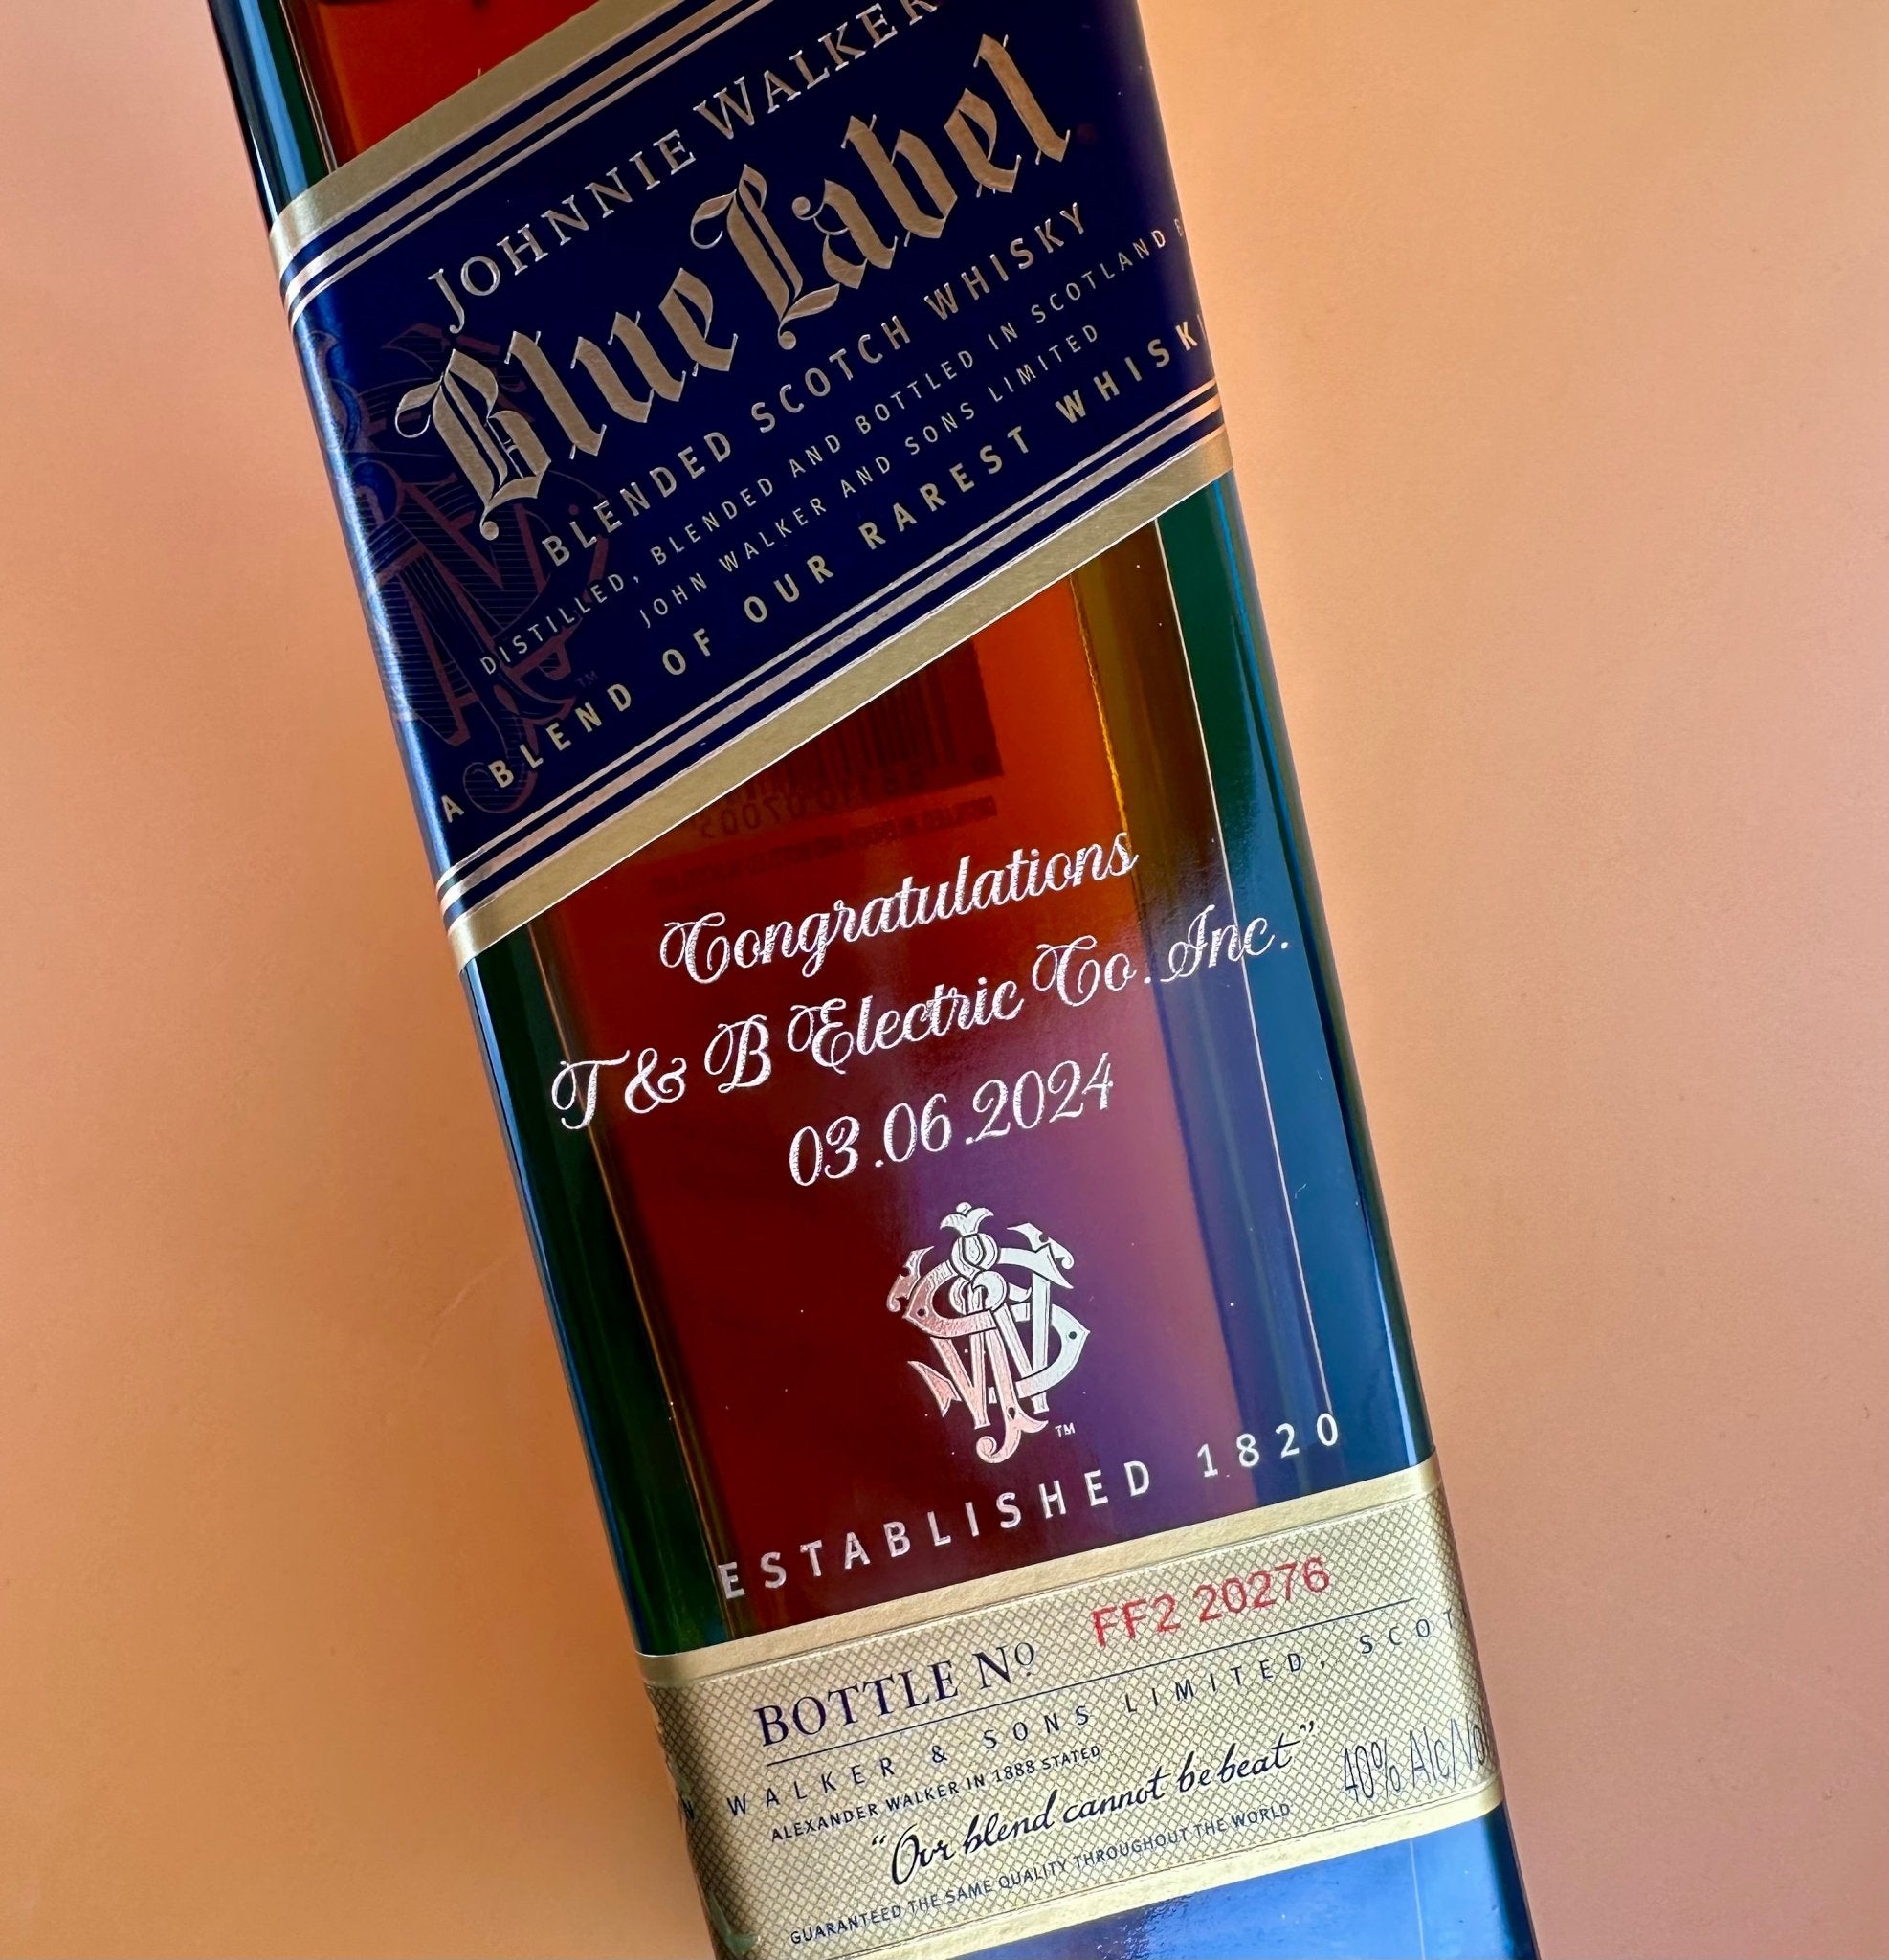 Johnnie Walker Blue Label Blended Scotch Whiskey - Bottle Engraving